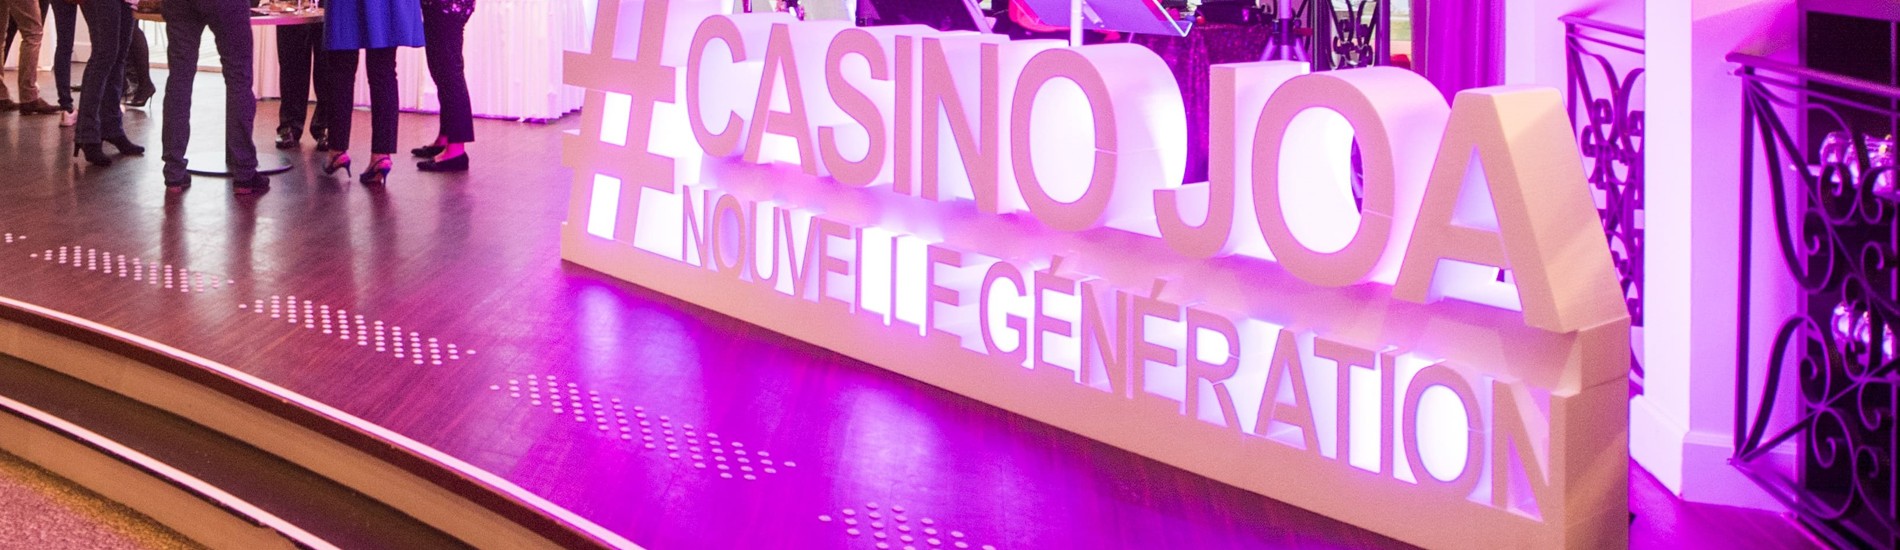 Logo évènementiel en polystyrène géants hashtag Casino Joa Nouvelle Génération Fête Ouverture Animation